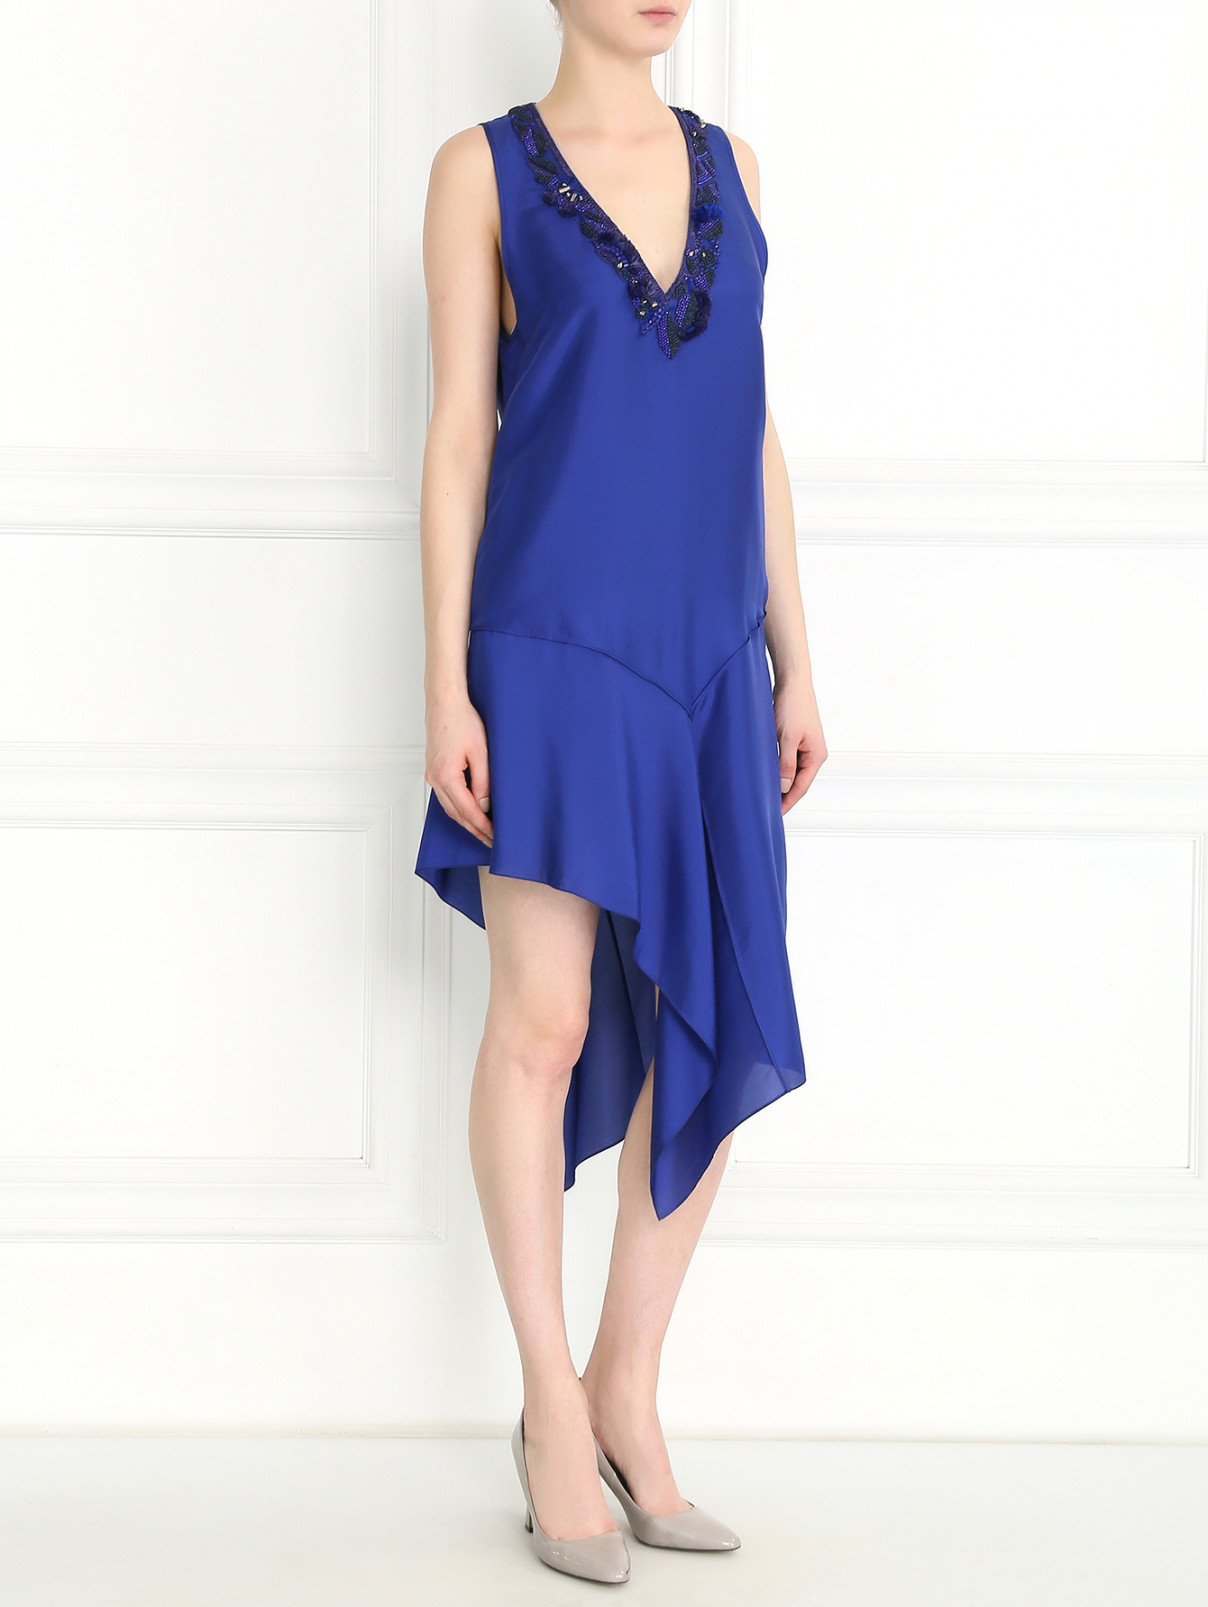 Платье из шелка с аппликацией из бисера Barbara Bui  –  Модель Общий вид  – Цвет:  Синий